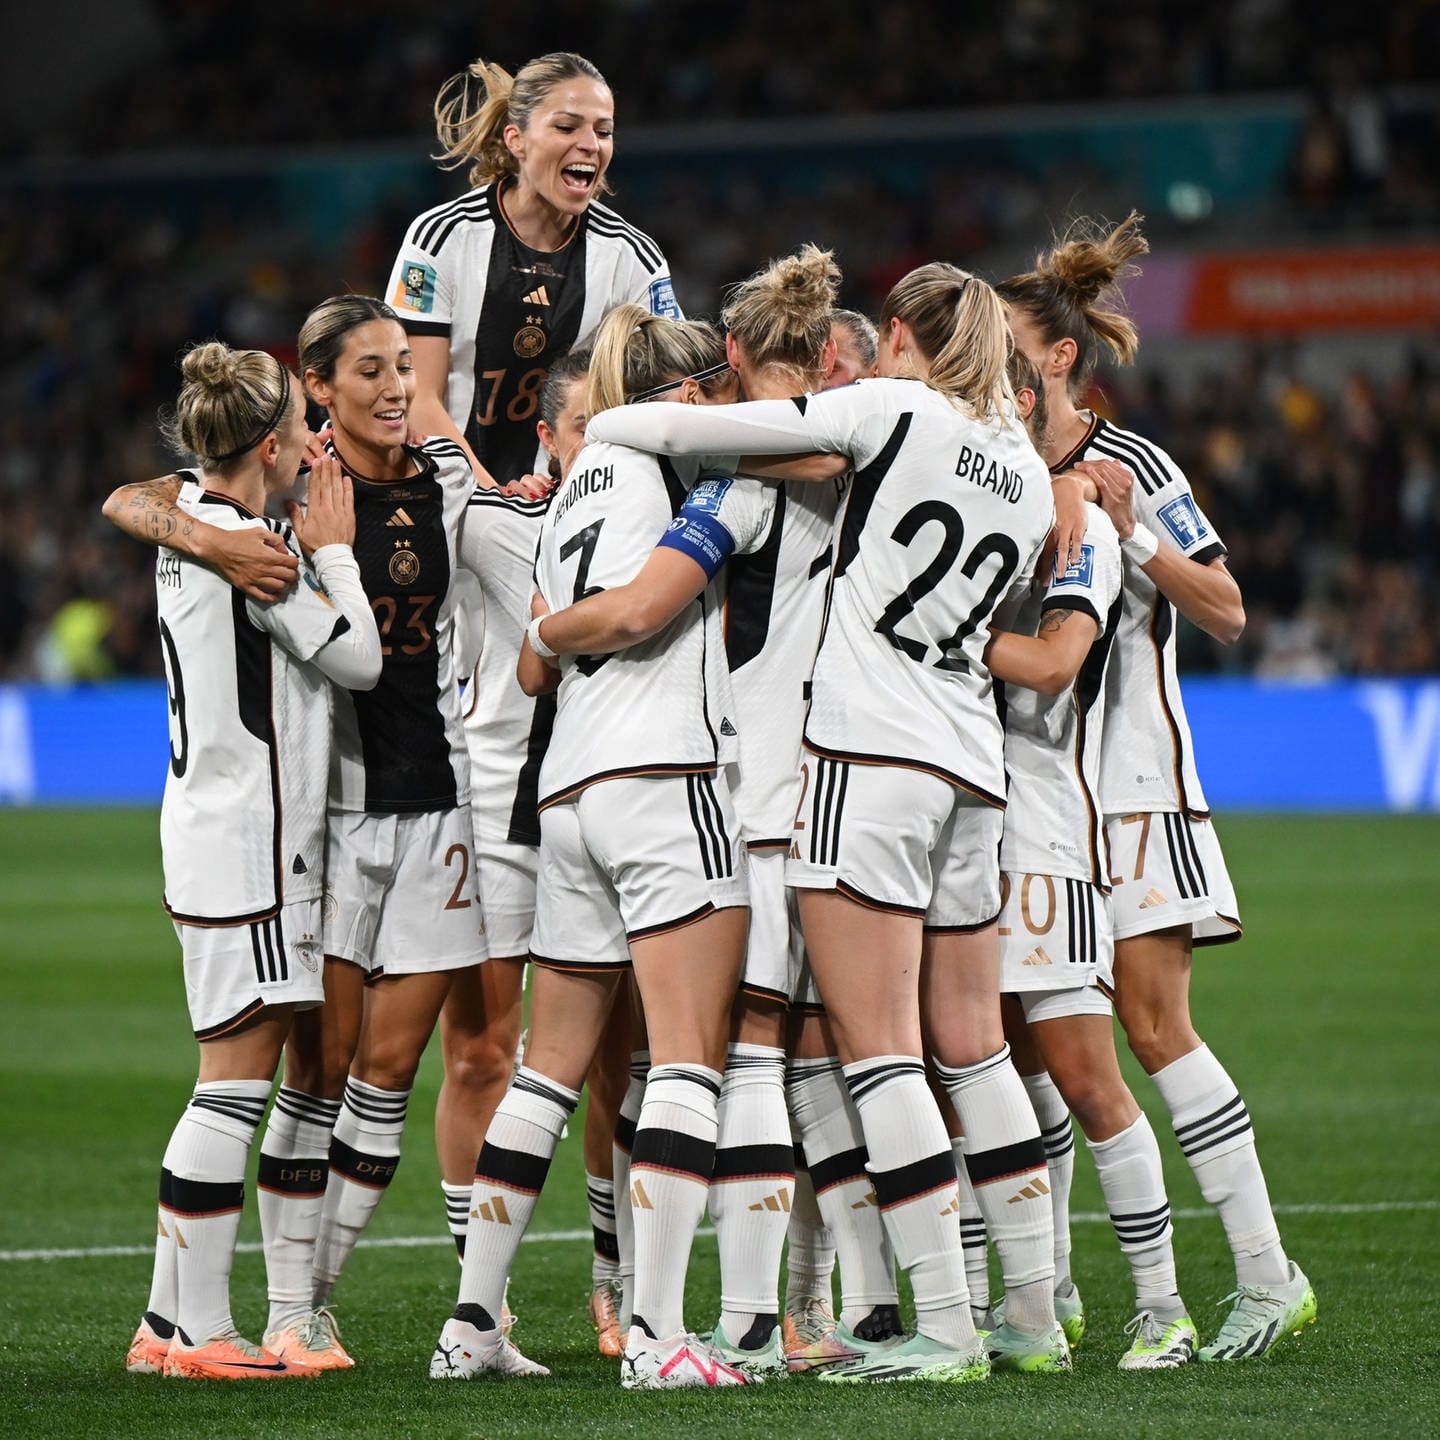 Fußball-WM der Frauen - Wie ist die Begeisterung in Heilbronn?